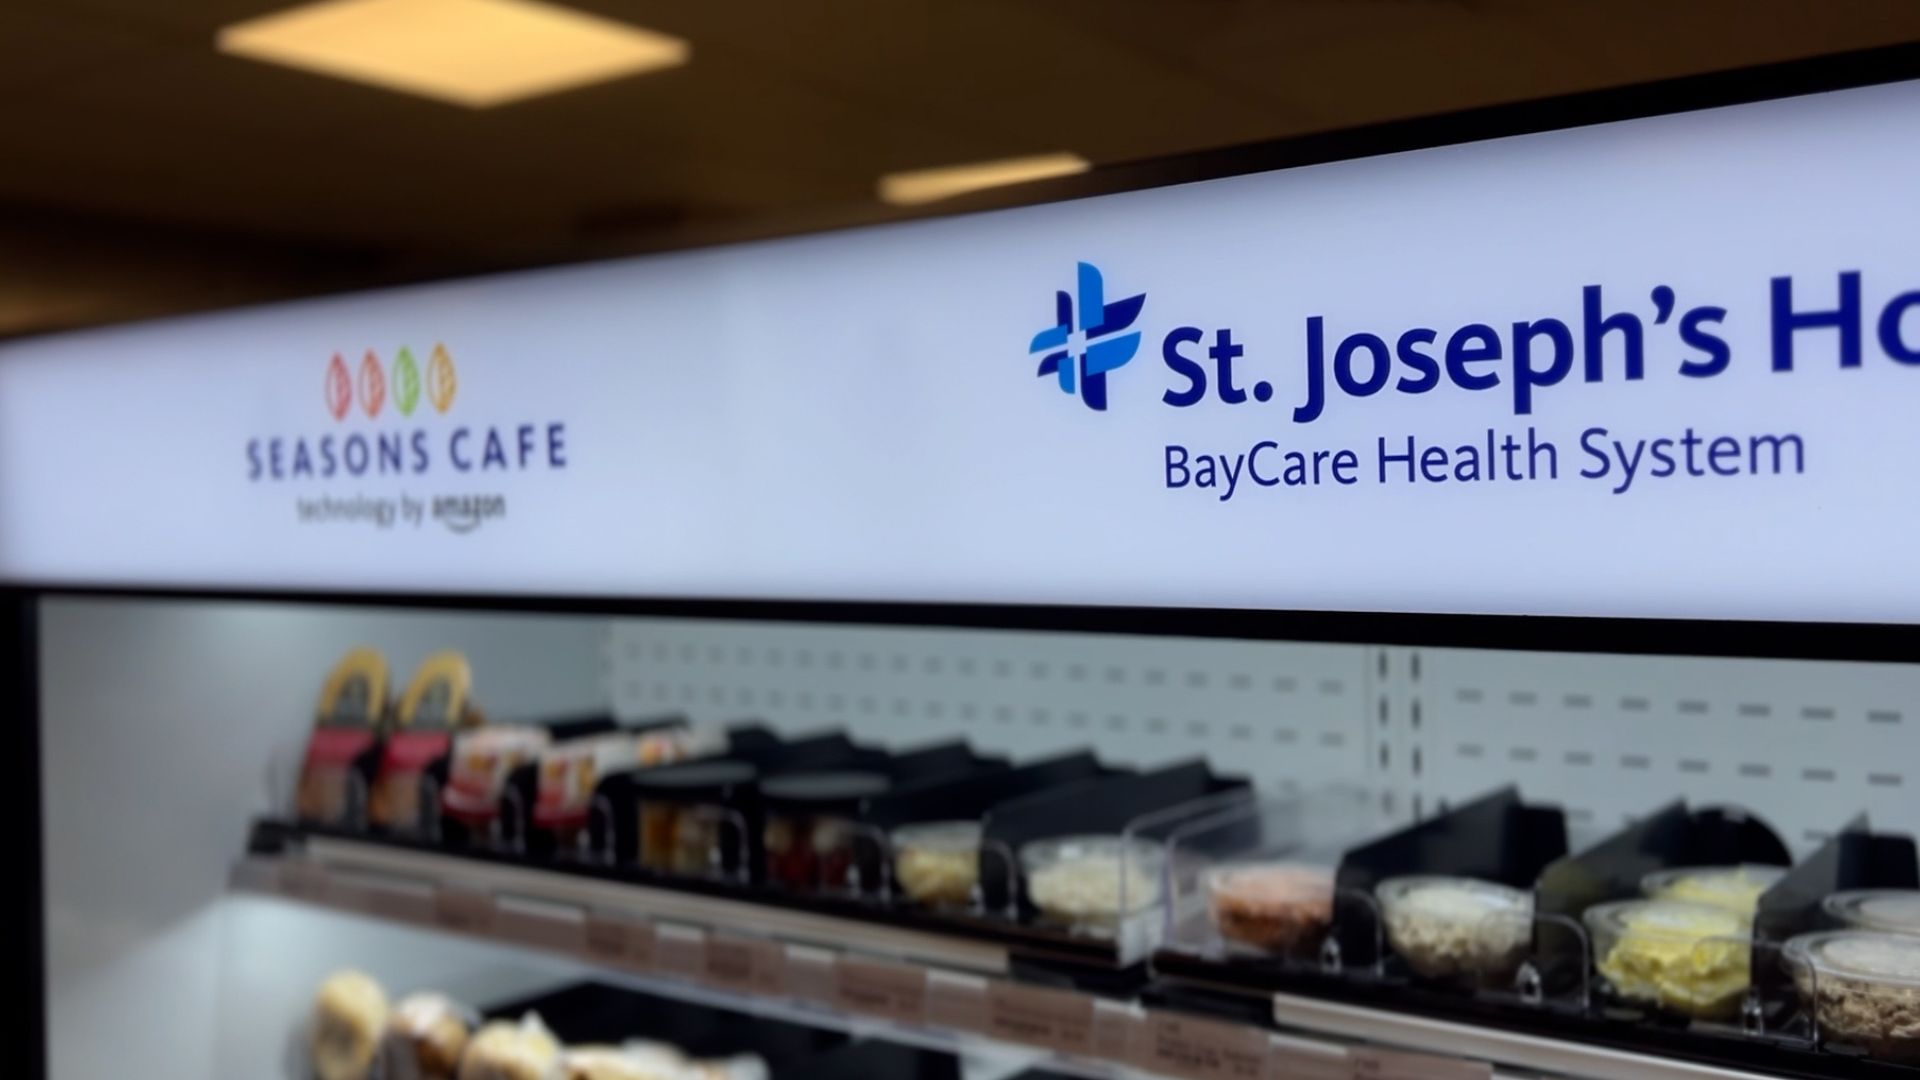 St. Joseph's Unveils Season's Café with Amazon's Just Walk Out Tech